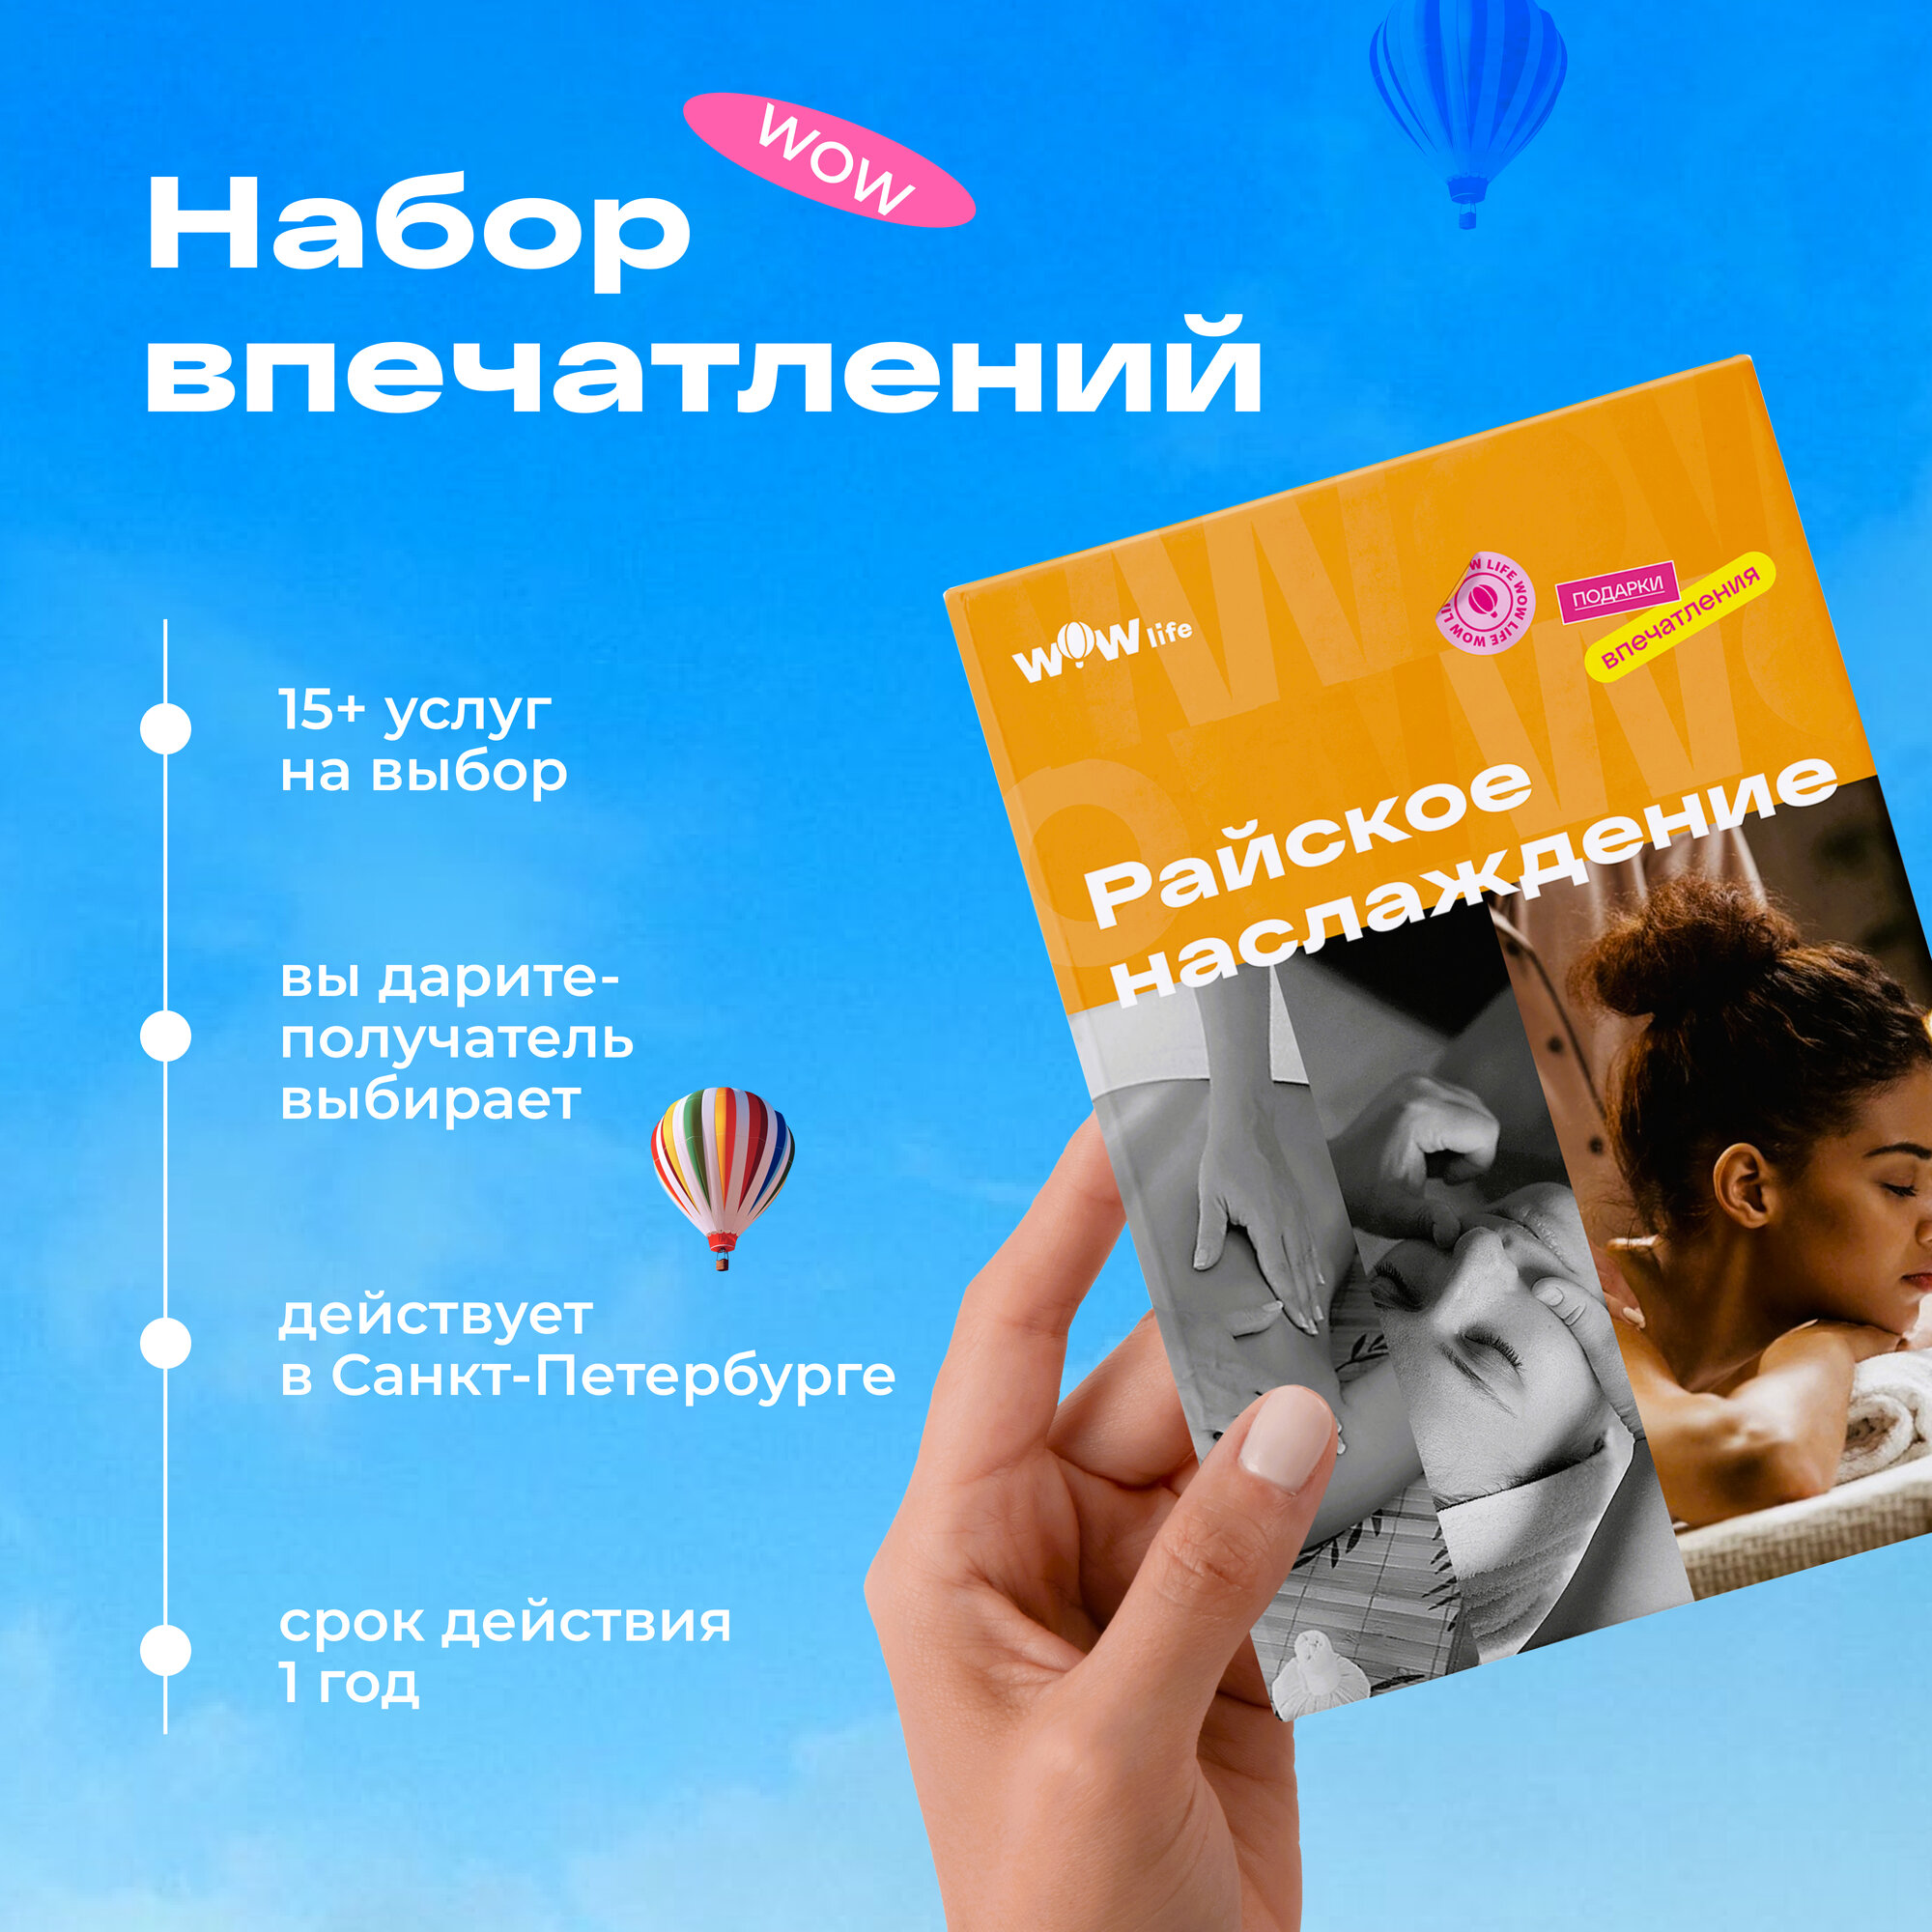 Подарочный сертификат WOWlife "Райское наслаждение" - набор из впечатлений на выбор, Санкт-Петербург